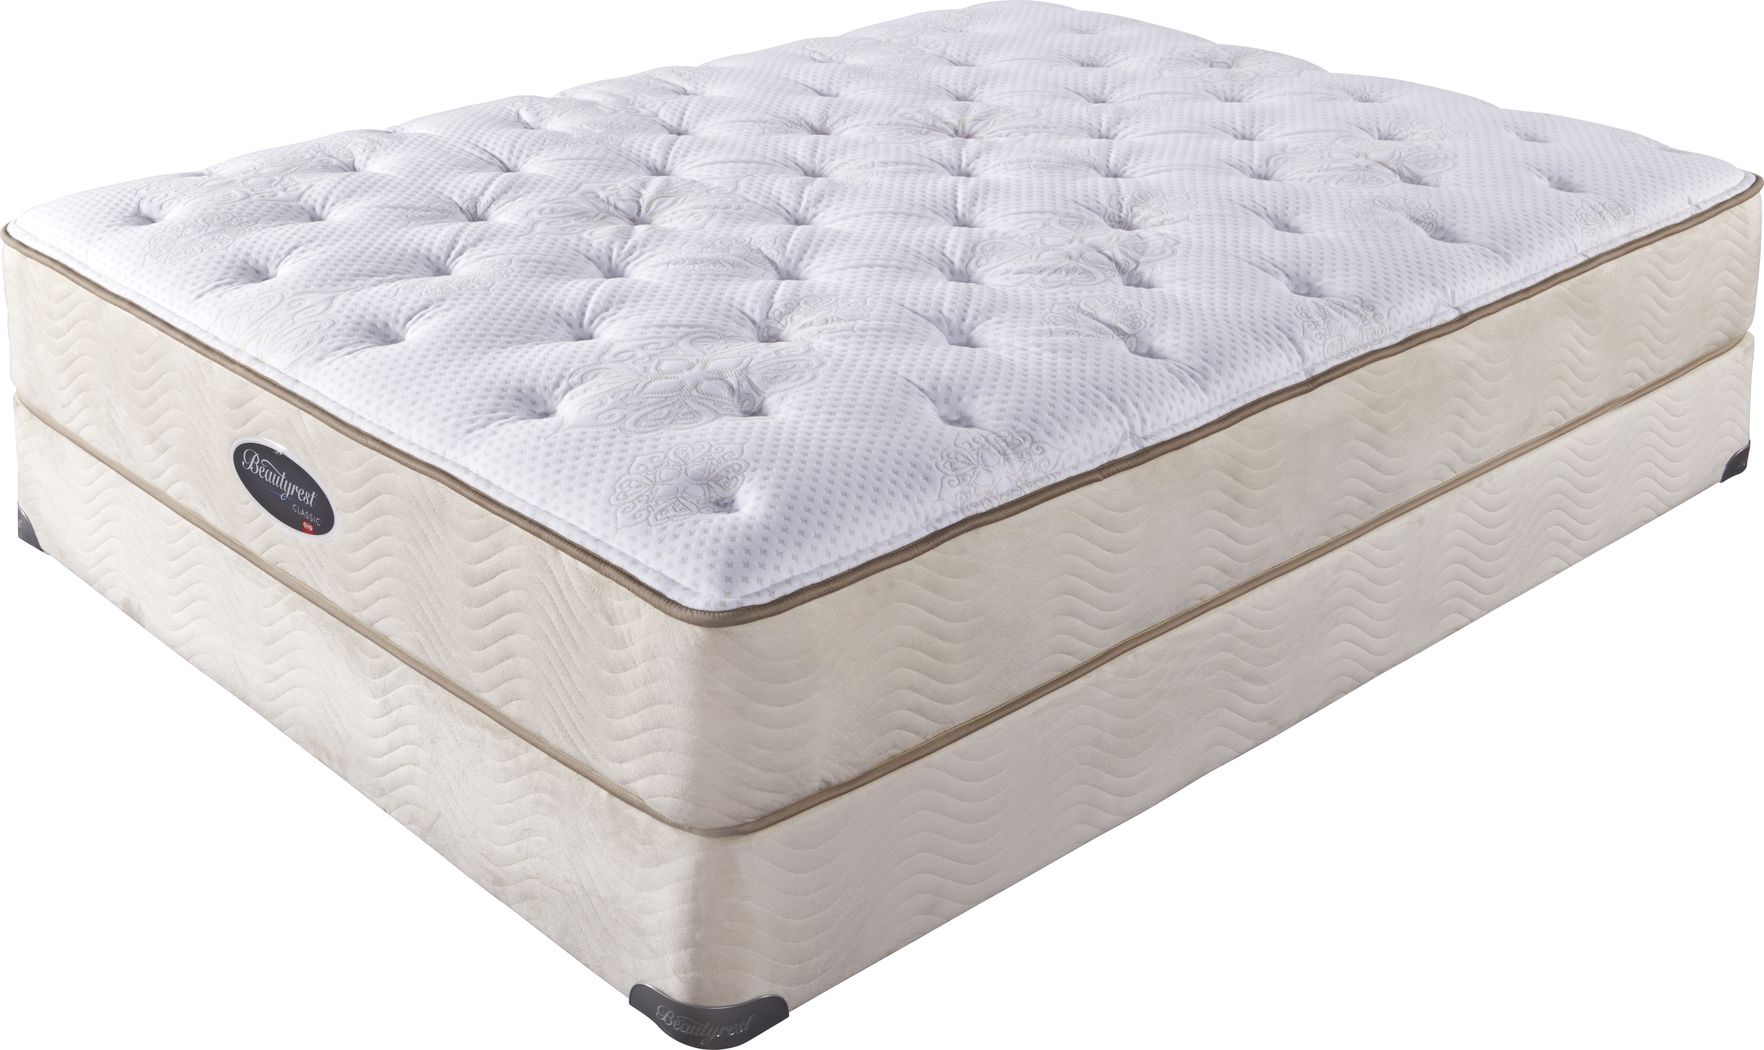 beautyrest classic twin mattress